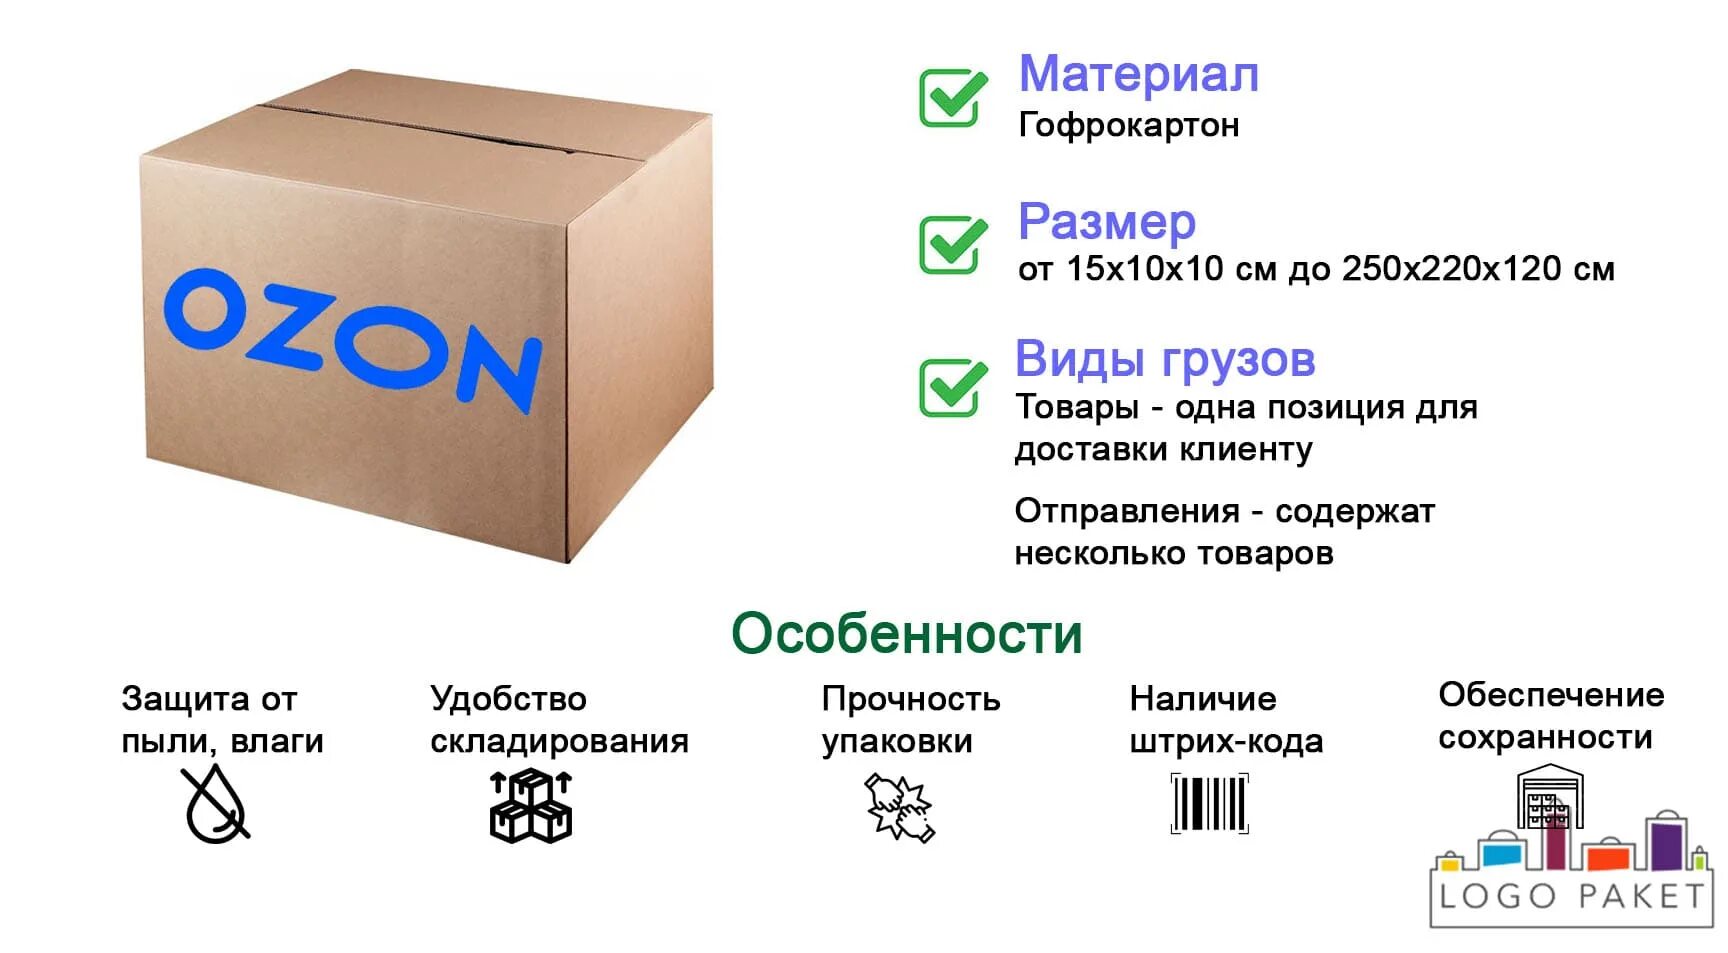 Упаковка для товаров озон pvlogistic ru. Коробки Озон. Размер коробки Озон. Коробка для Озон Размеры. Упаковка посылок Озон.